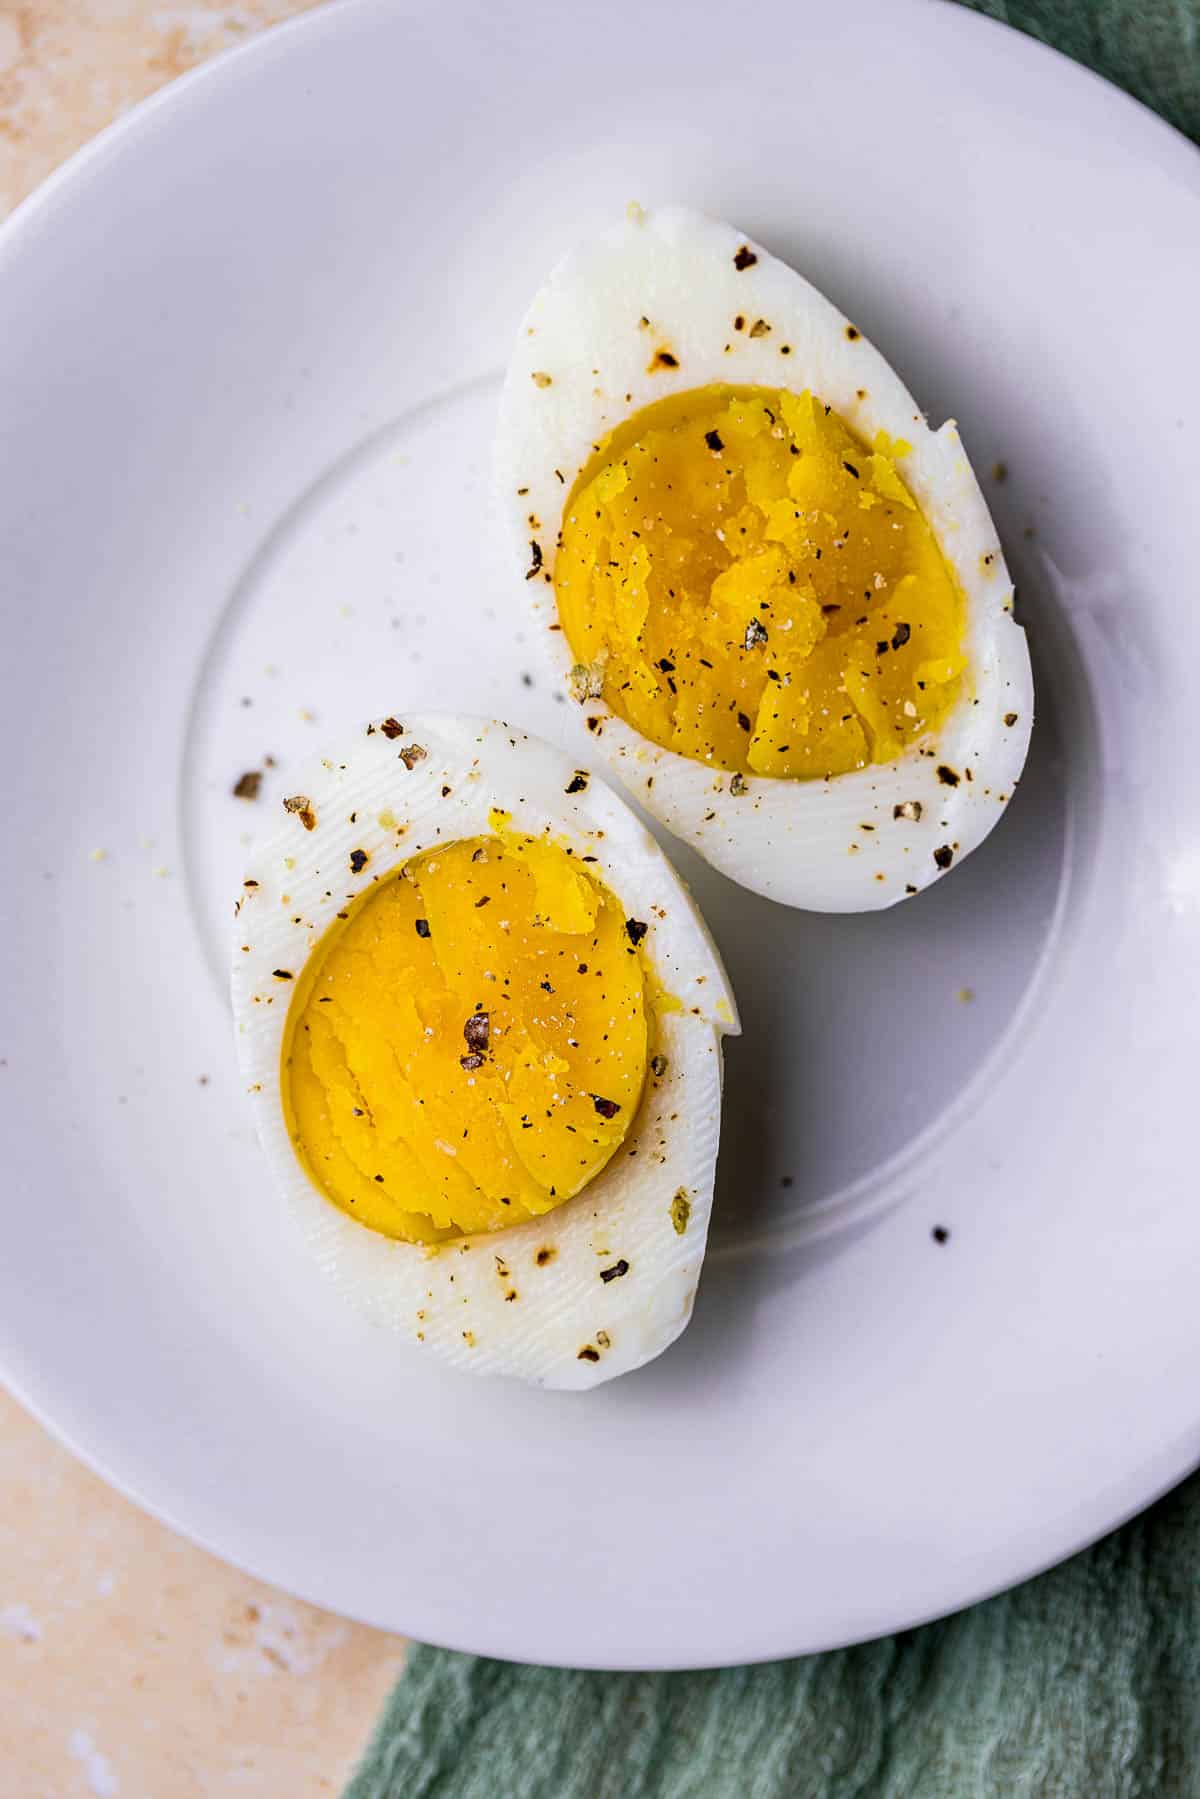 seasoned hard boiled eggs on a plate